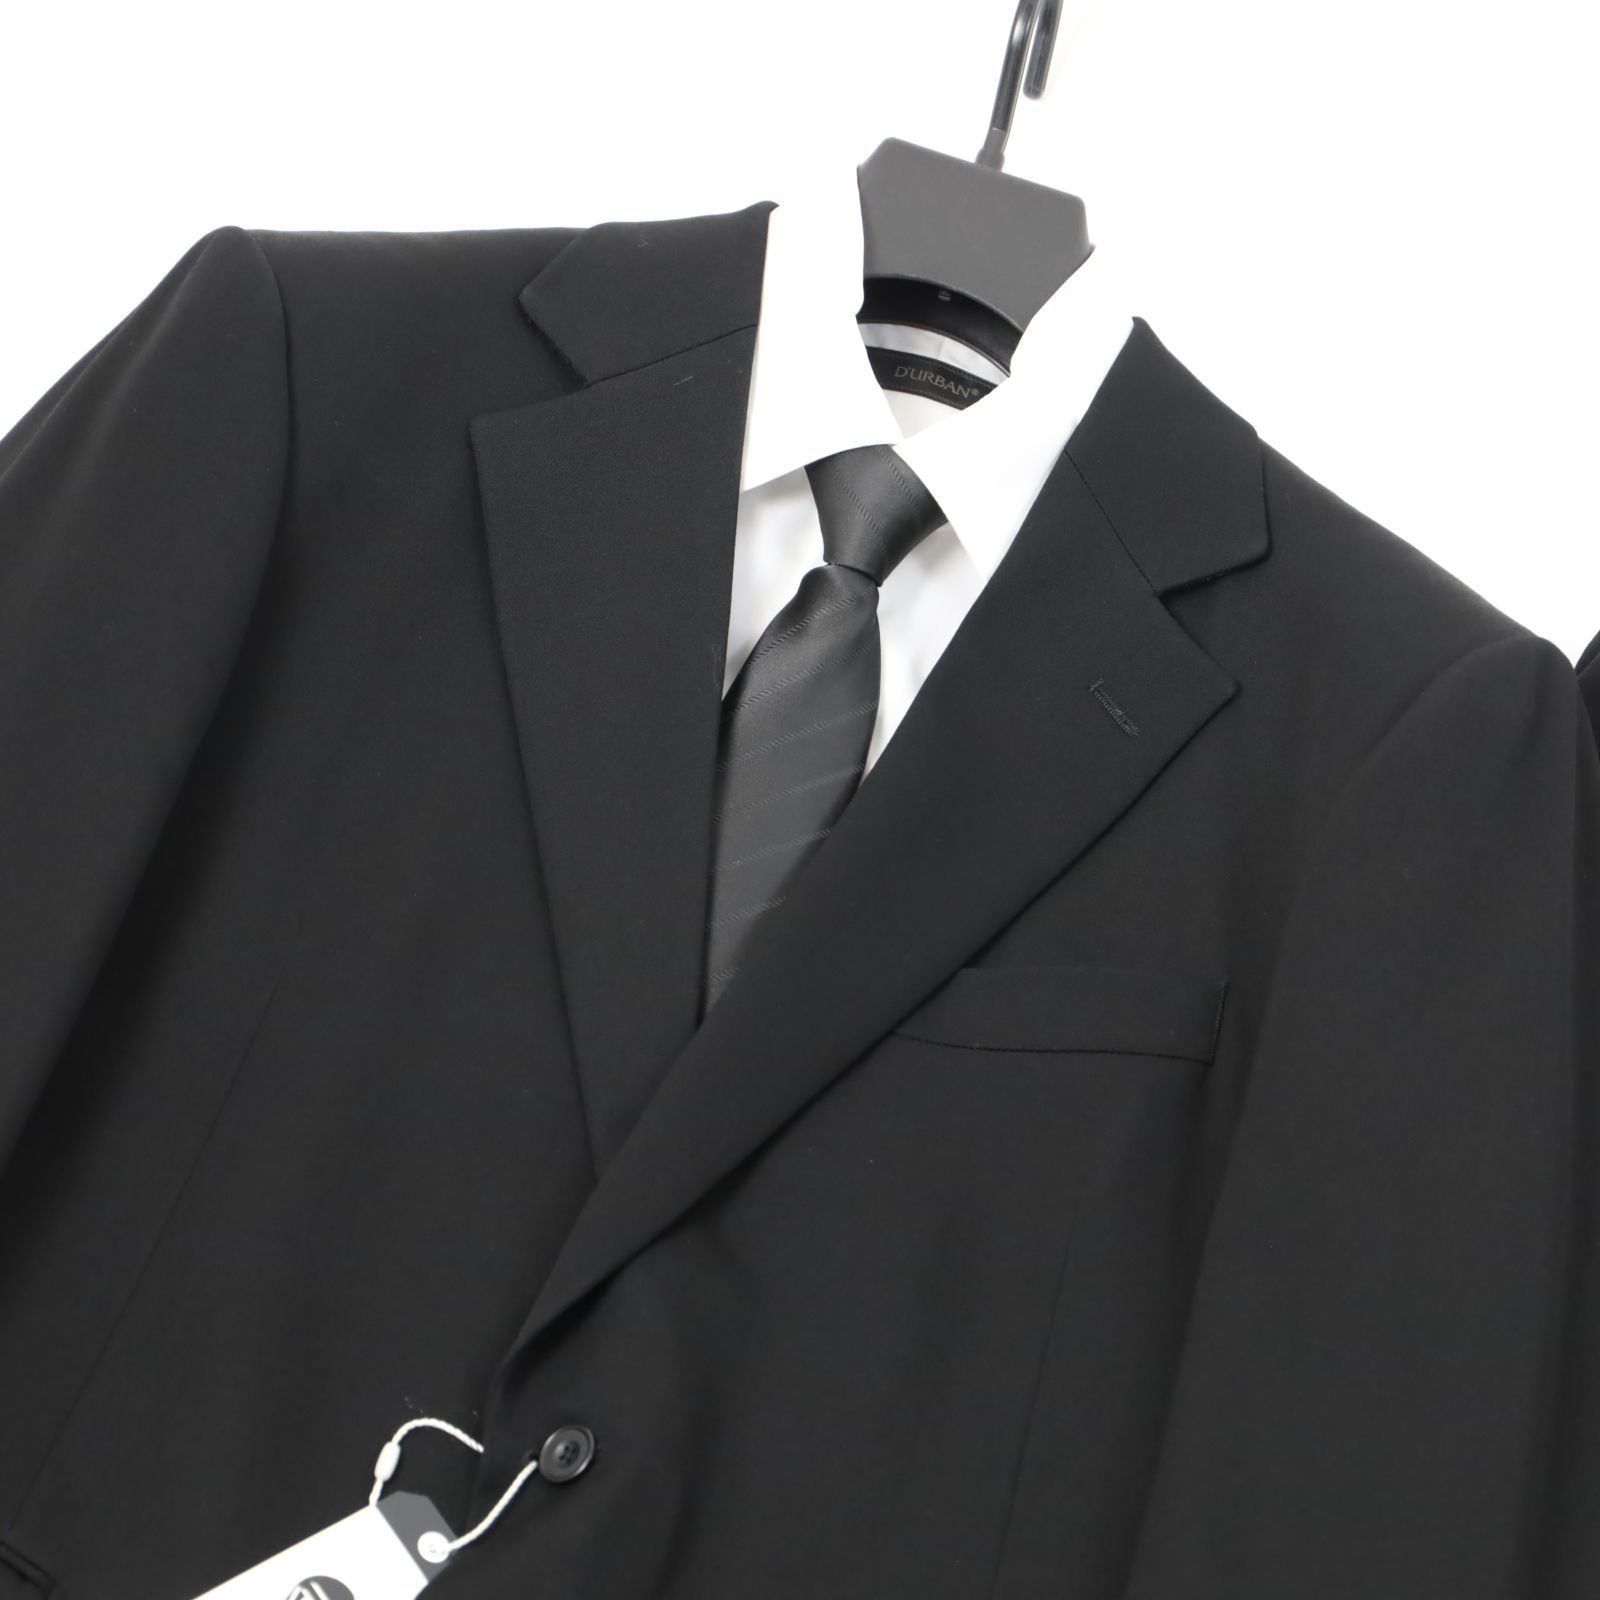 新品 五大陸 WEAR BLACK フォーマル 礼服 ブラックスーツ メンズ ウール BB6 定価7.5万 -725